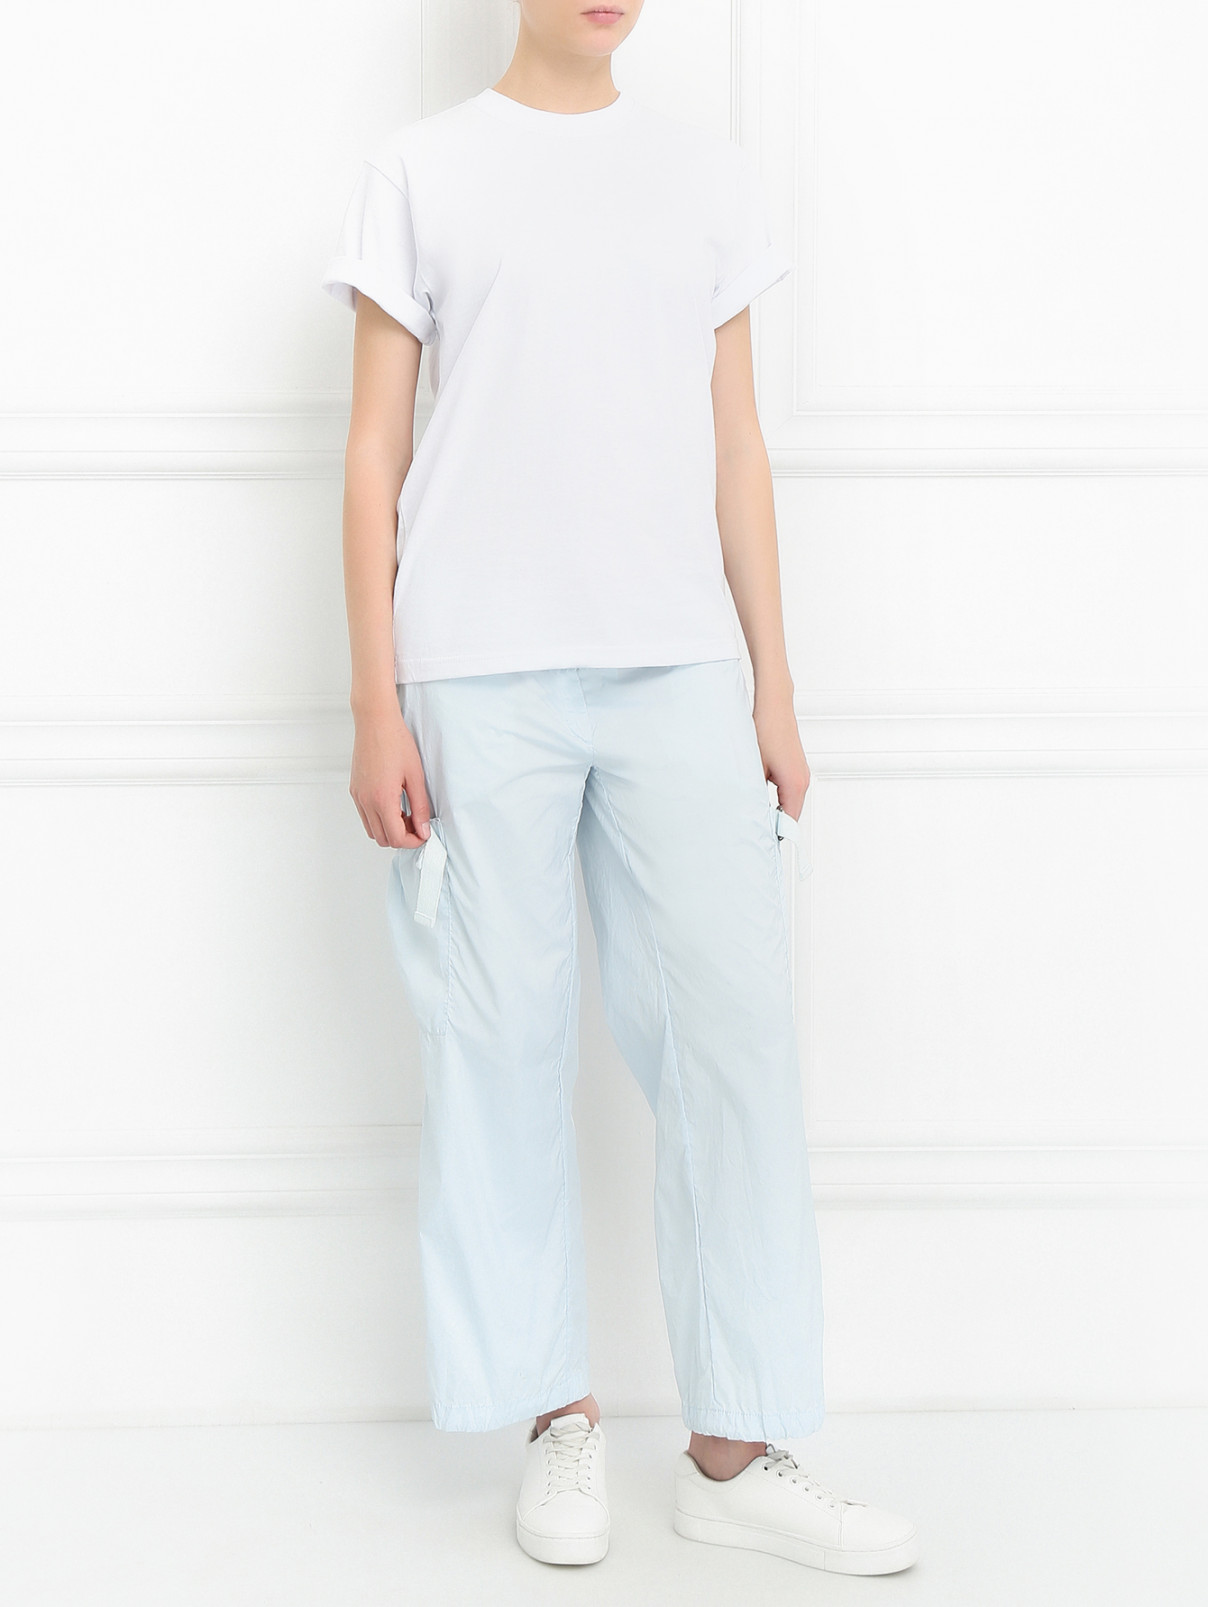 Укороченные брюки с накладными карманами Jet Set  –  Модель Общий вид  – Цвет:  Синий